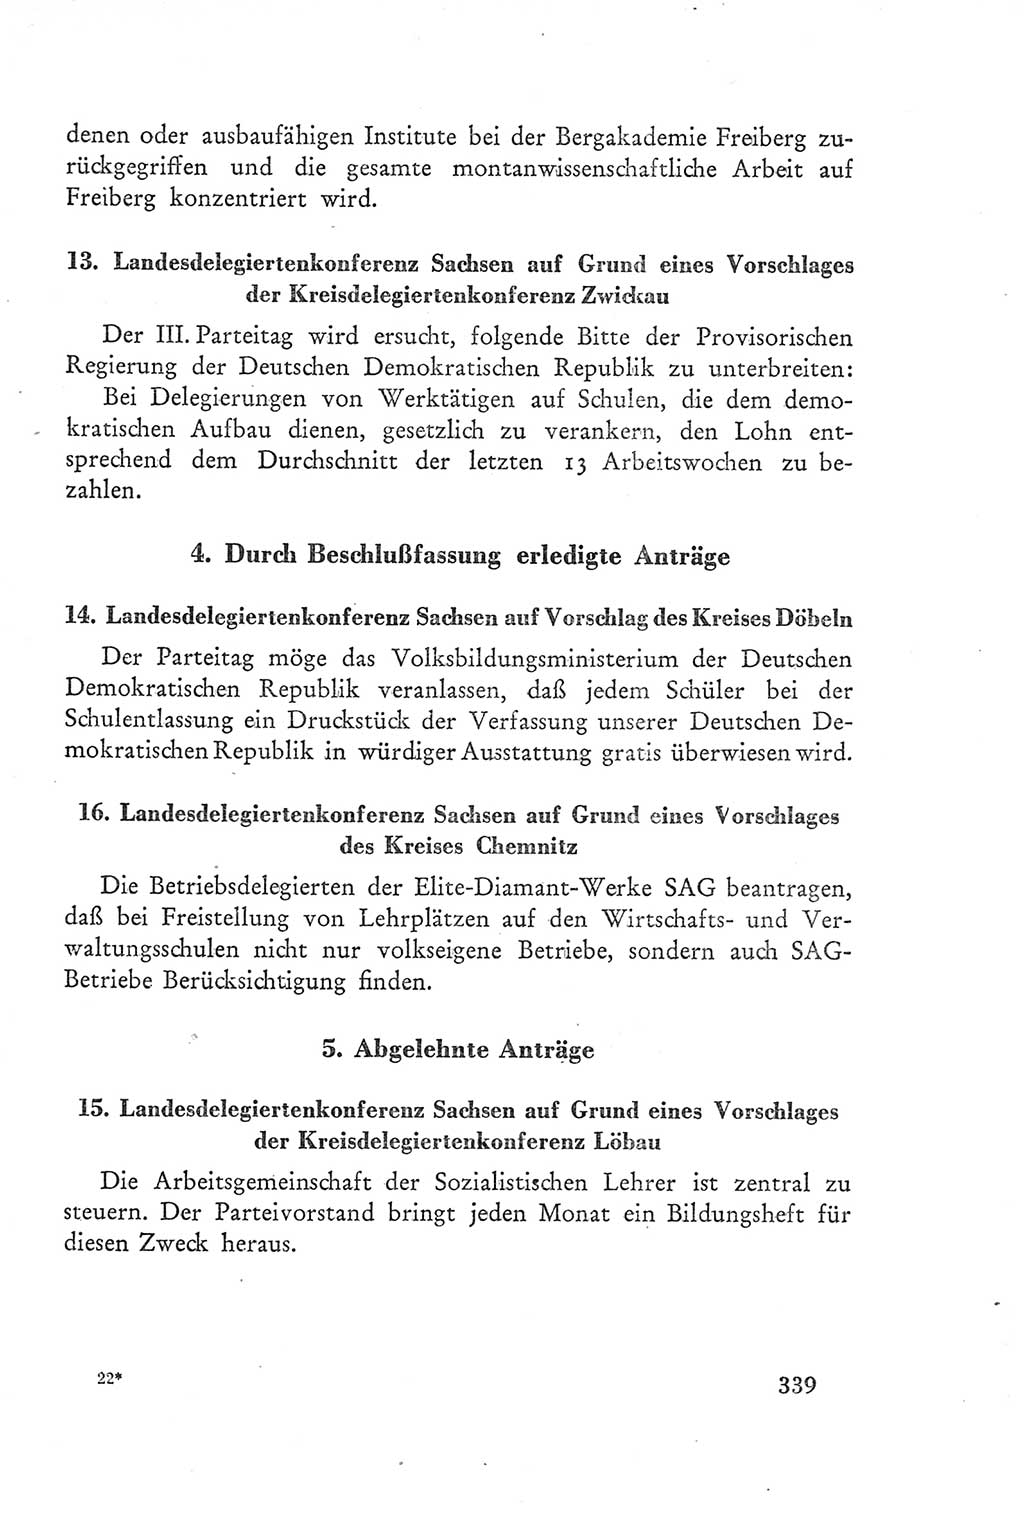 Protokoll der Verhandlungen des Ⅲ. Parteitages der Sozialistischen Einheitspartei Deutschlands (SED) [Deutsche Demokratische Republik (DDR)] 1950, Band 2, Seite 339 (Prot. Verh. Ⅲ. PT SED DDR 1950, Bd. 2, S. 339)